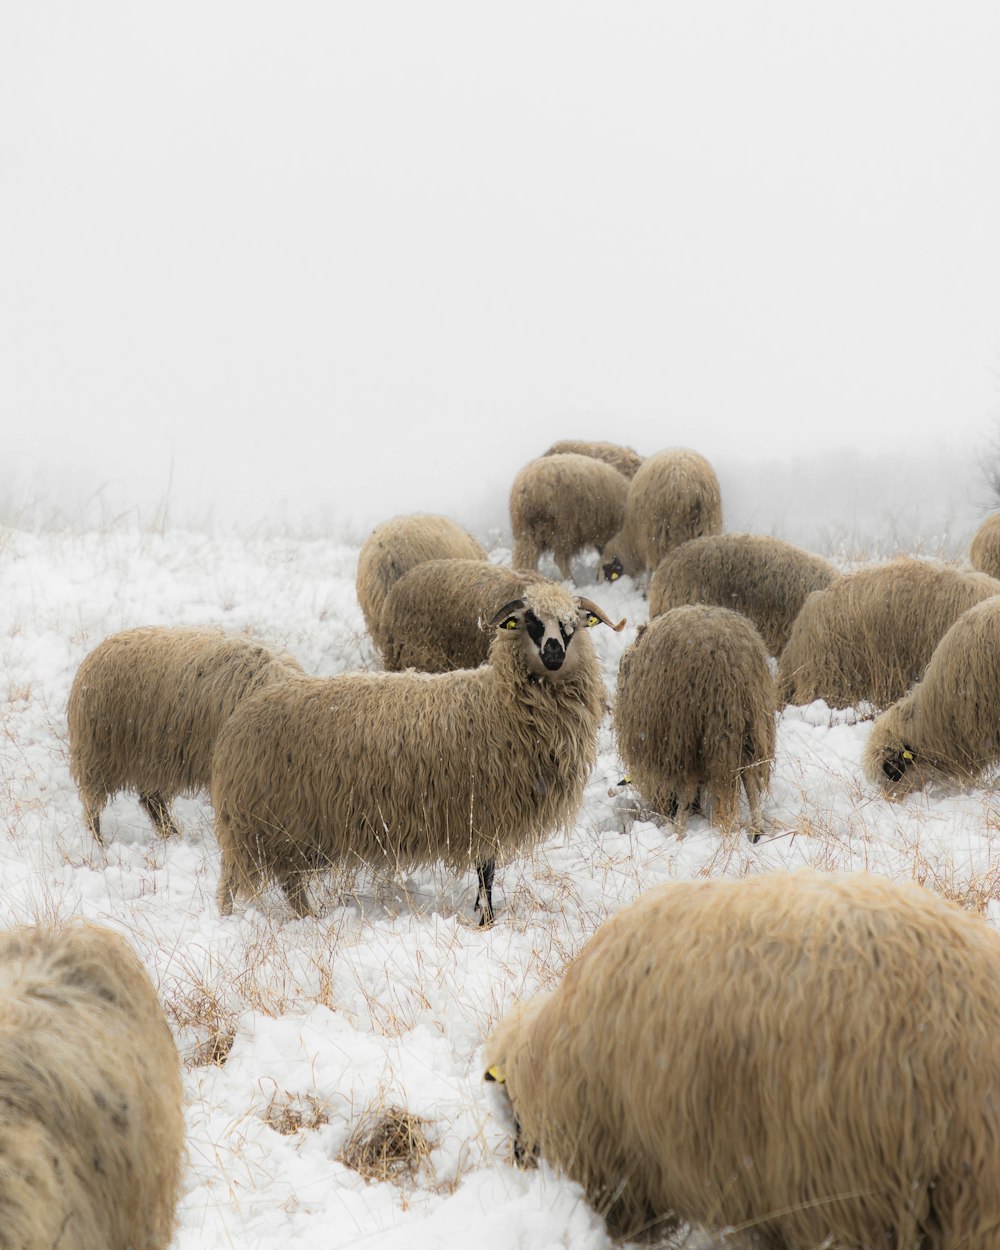 Schafherde tagsüber auf schneebedecktem Feld